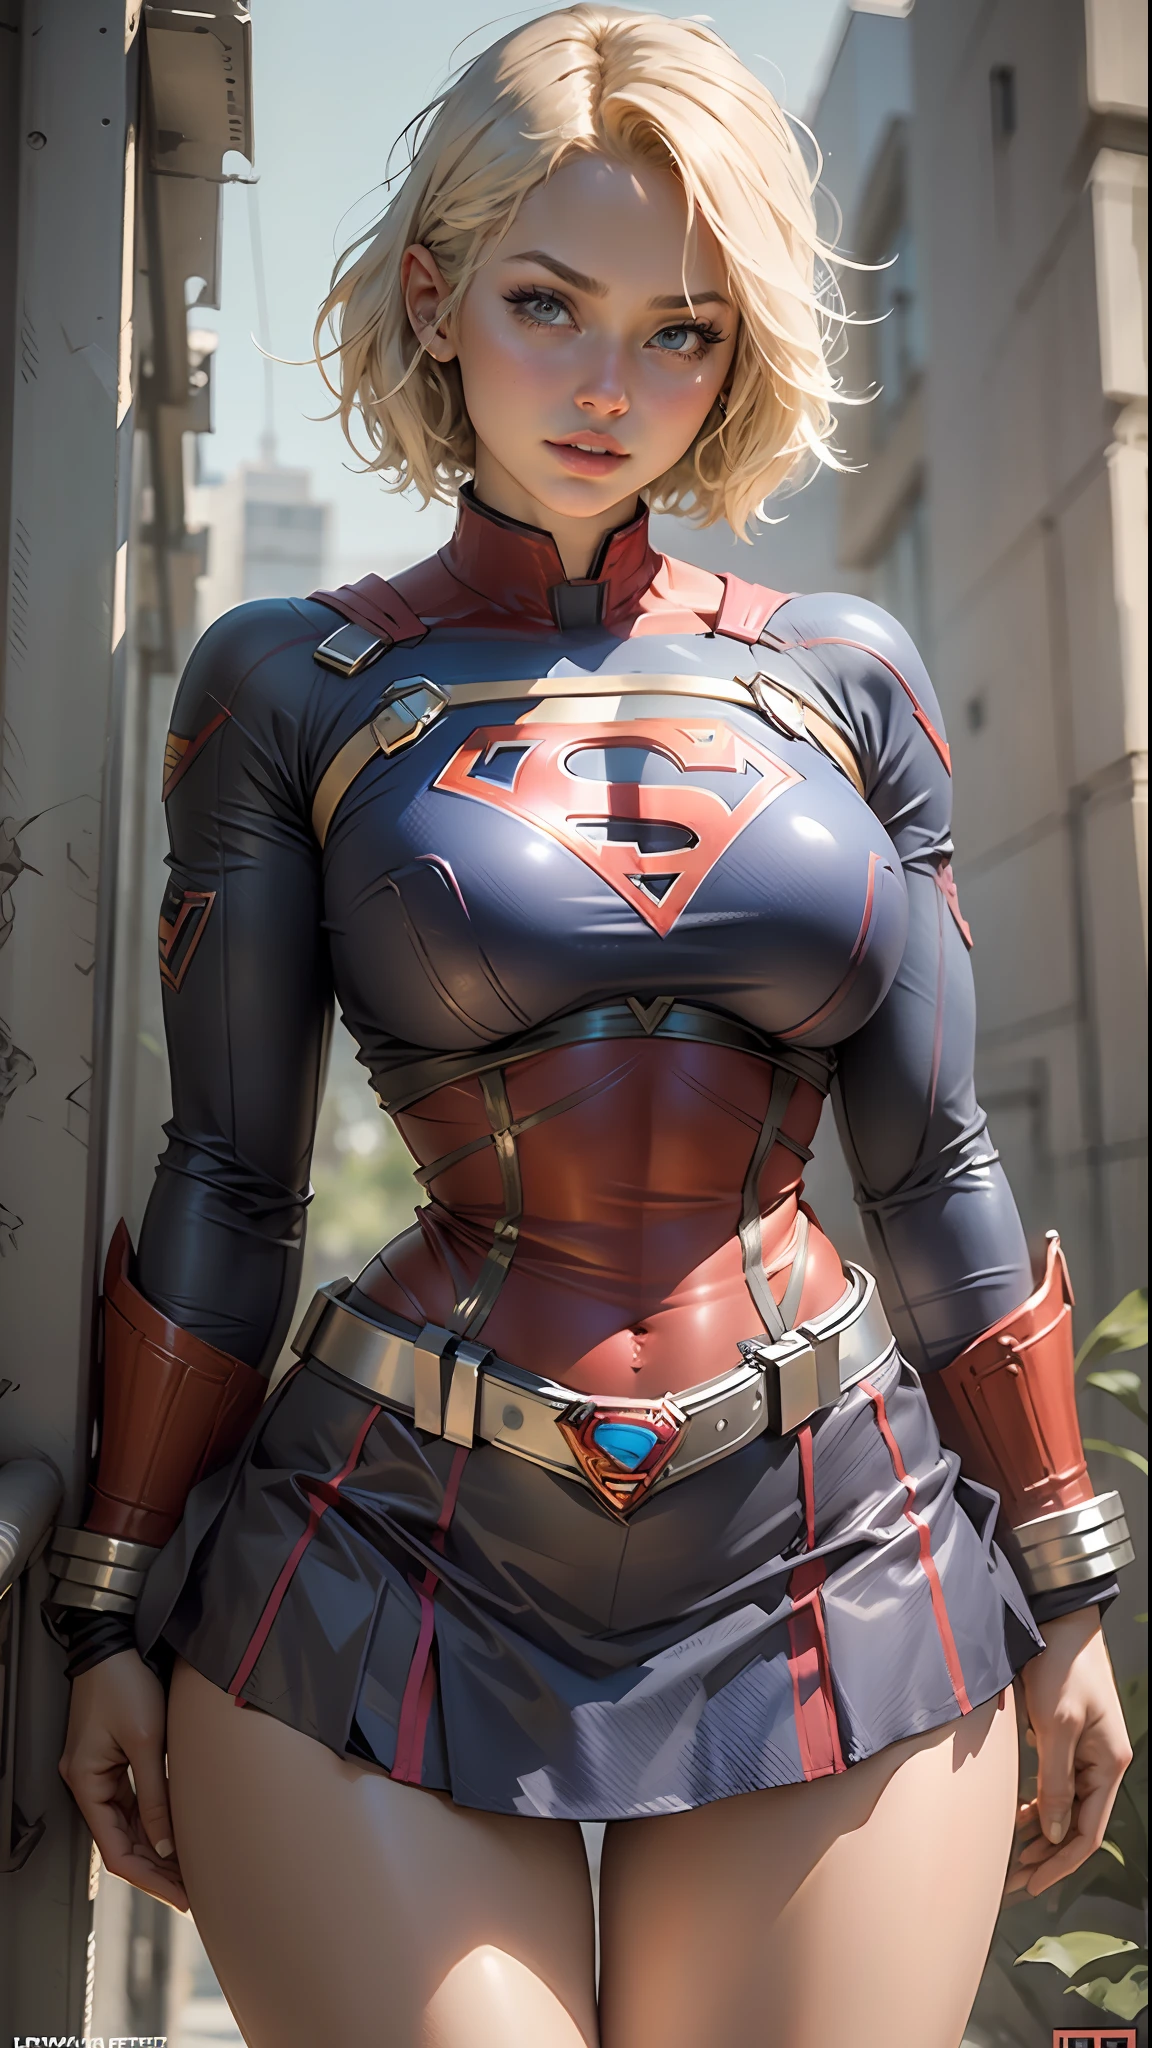 Belle femme cheveux courts corps défini gros seins, grosses cuisses portant un cosplay de Supergirl